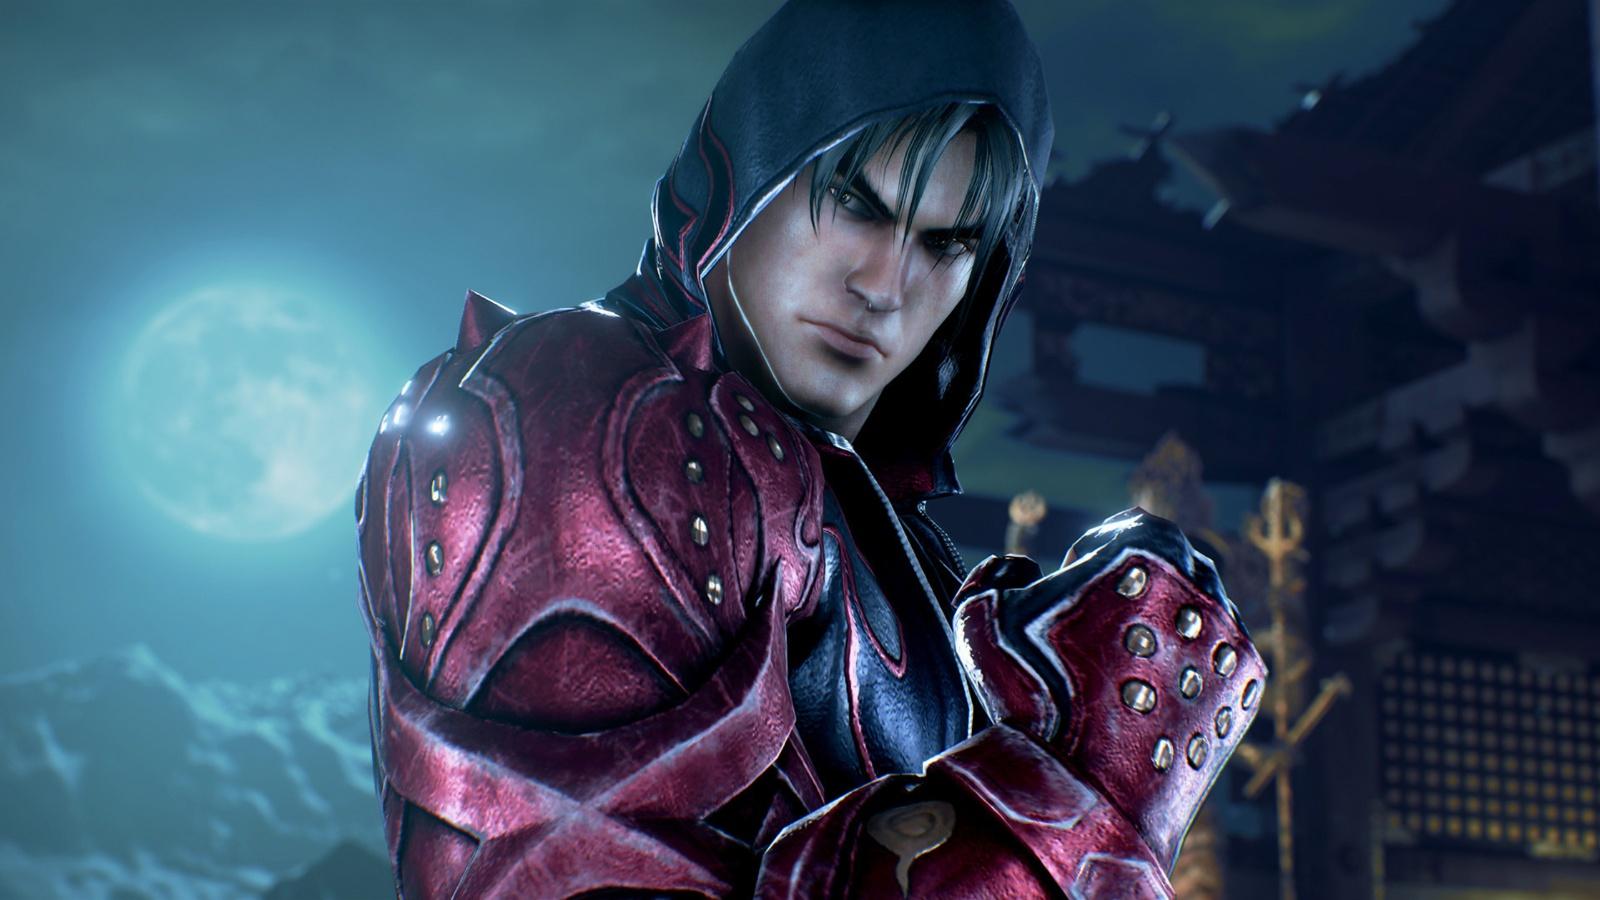 A screenshot from the game Tekken 7